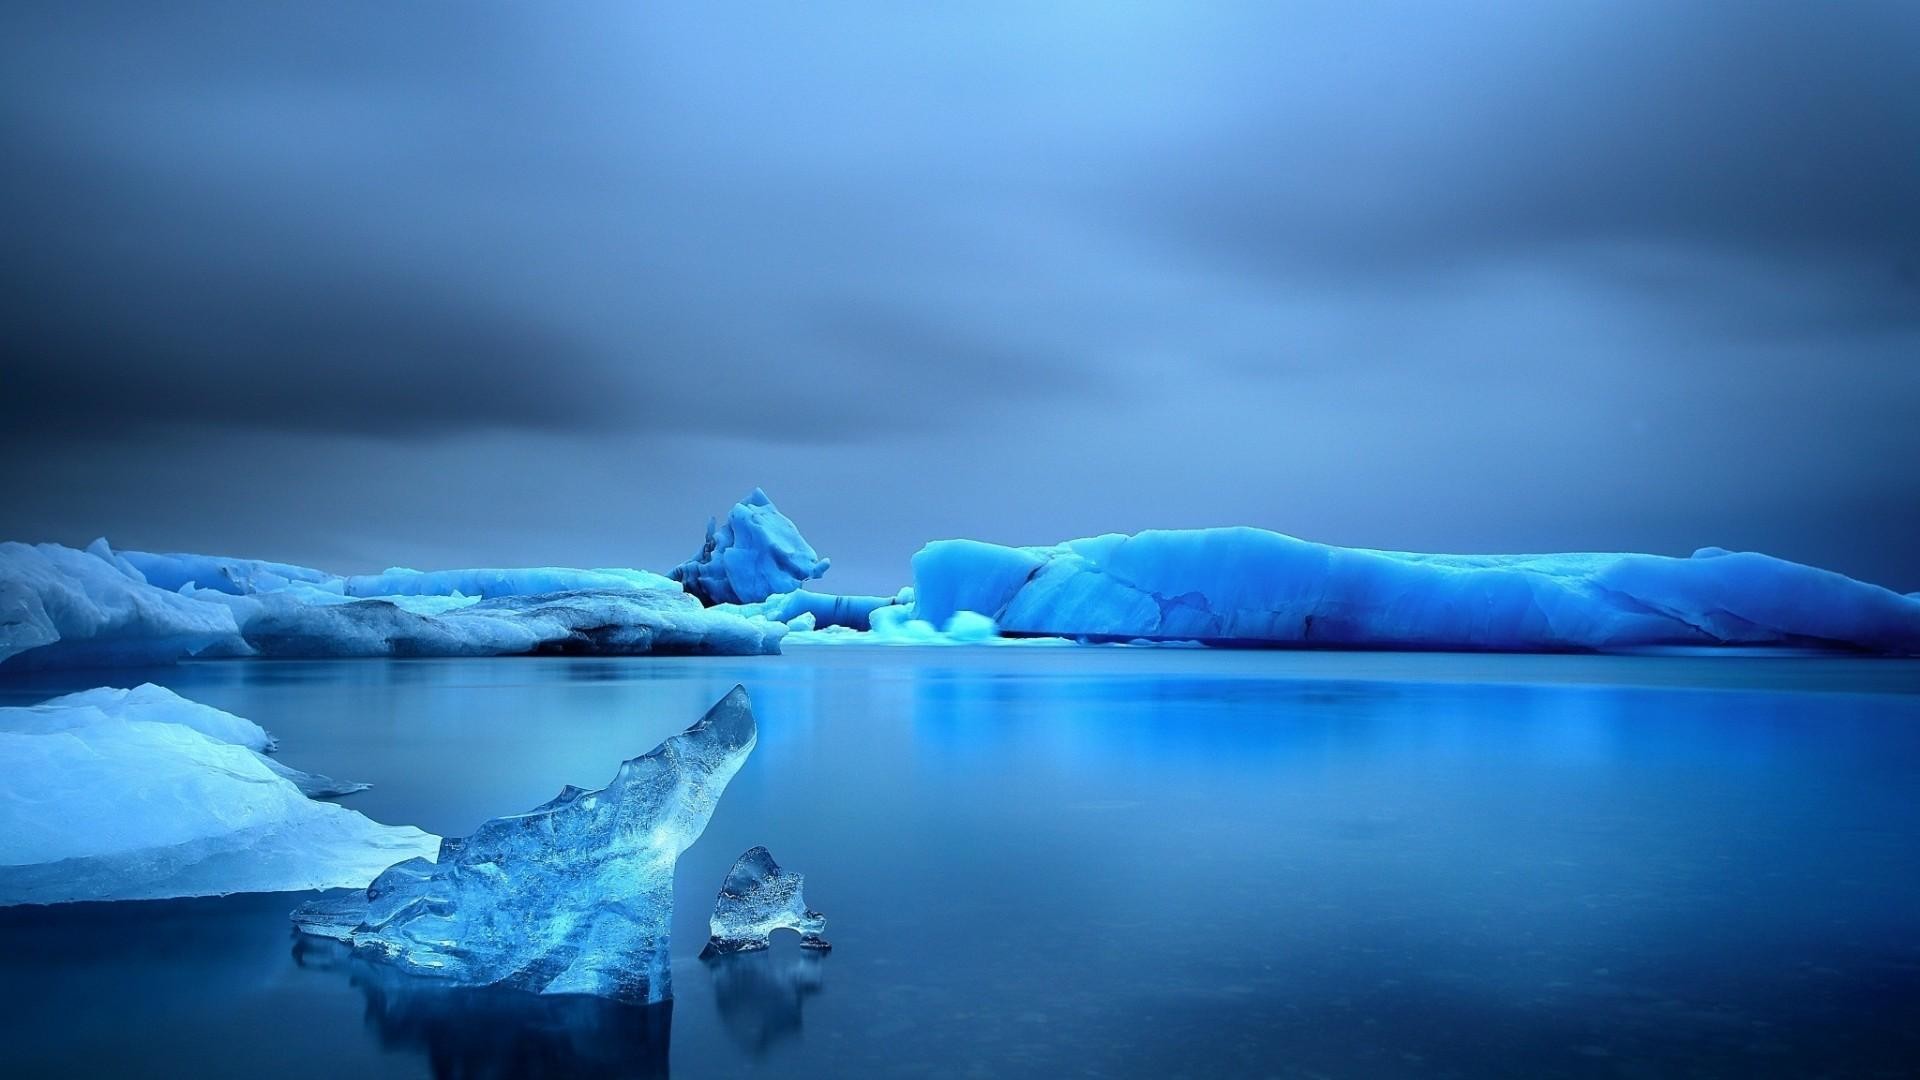 eisberg tapete hd,eisberg,eis,natur,arktischer ozean,ozean